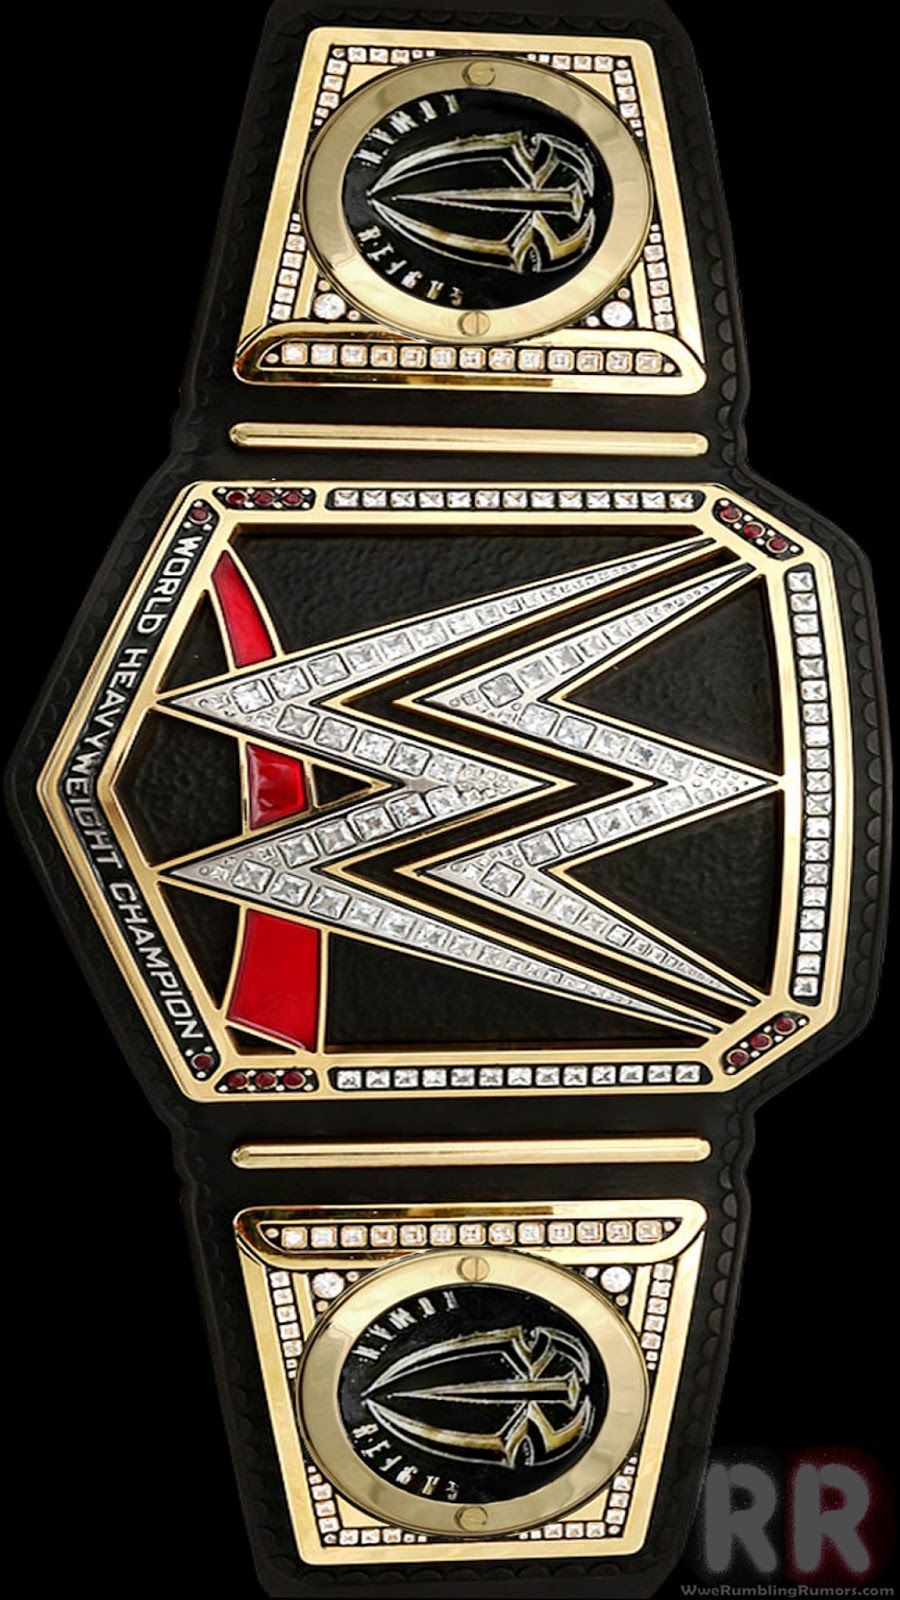 HD WWE Wallpaper. RumblingRumors.com. Wwe championship belts, Wwe belts, Wwe wallpaper